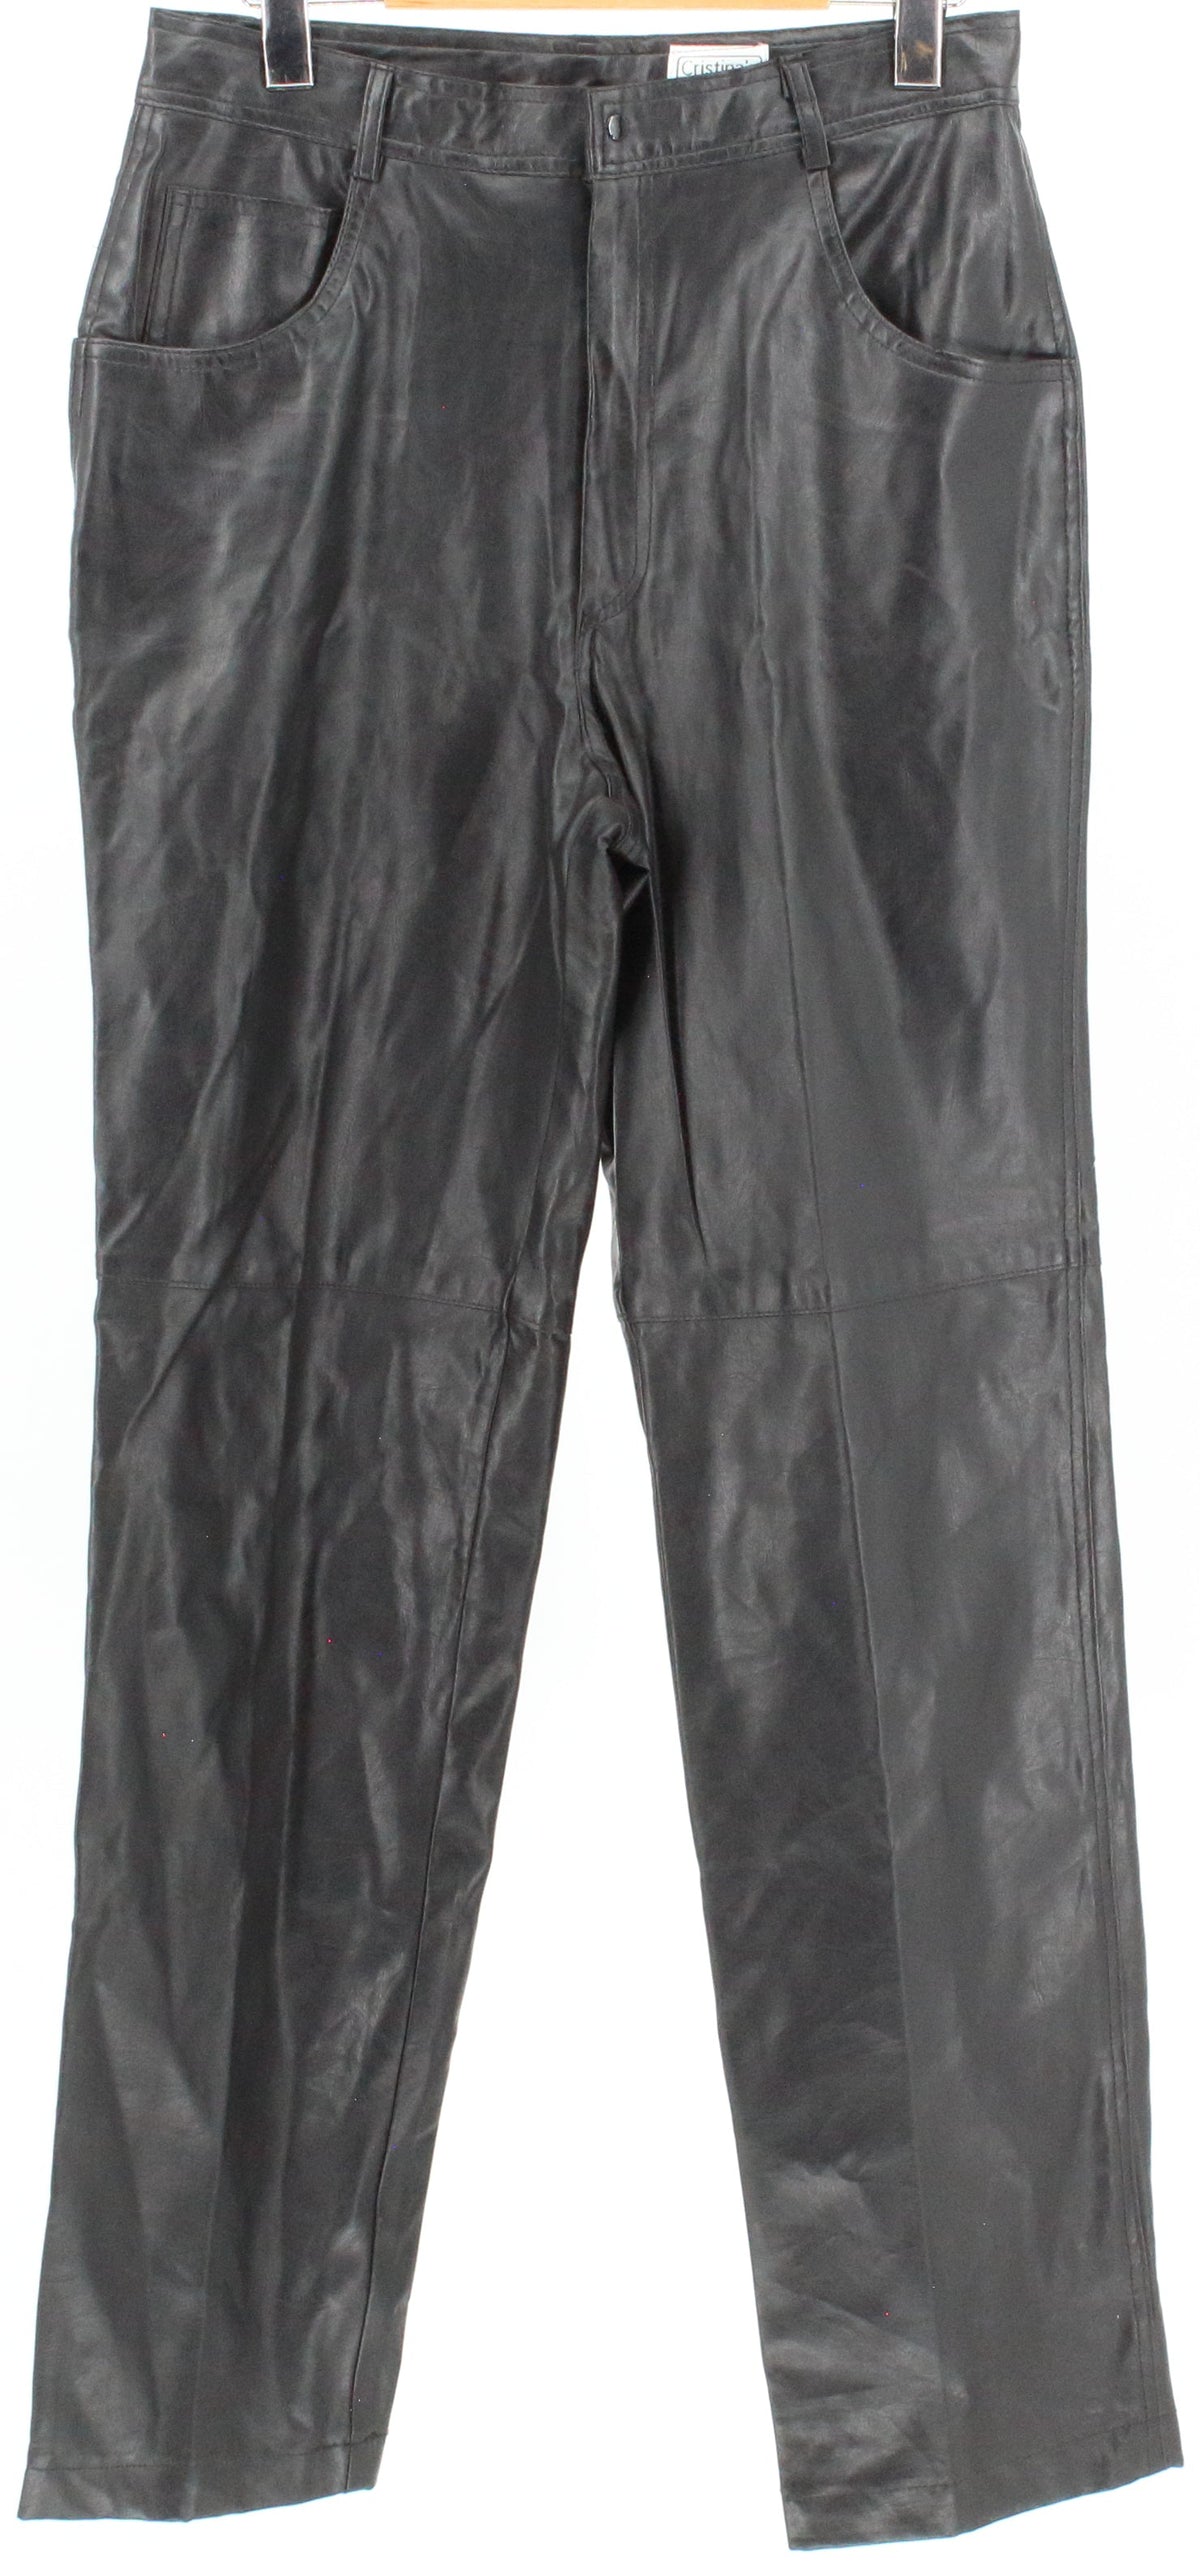 Cristina's Black Vegan Leather Pants